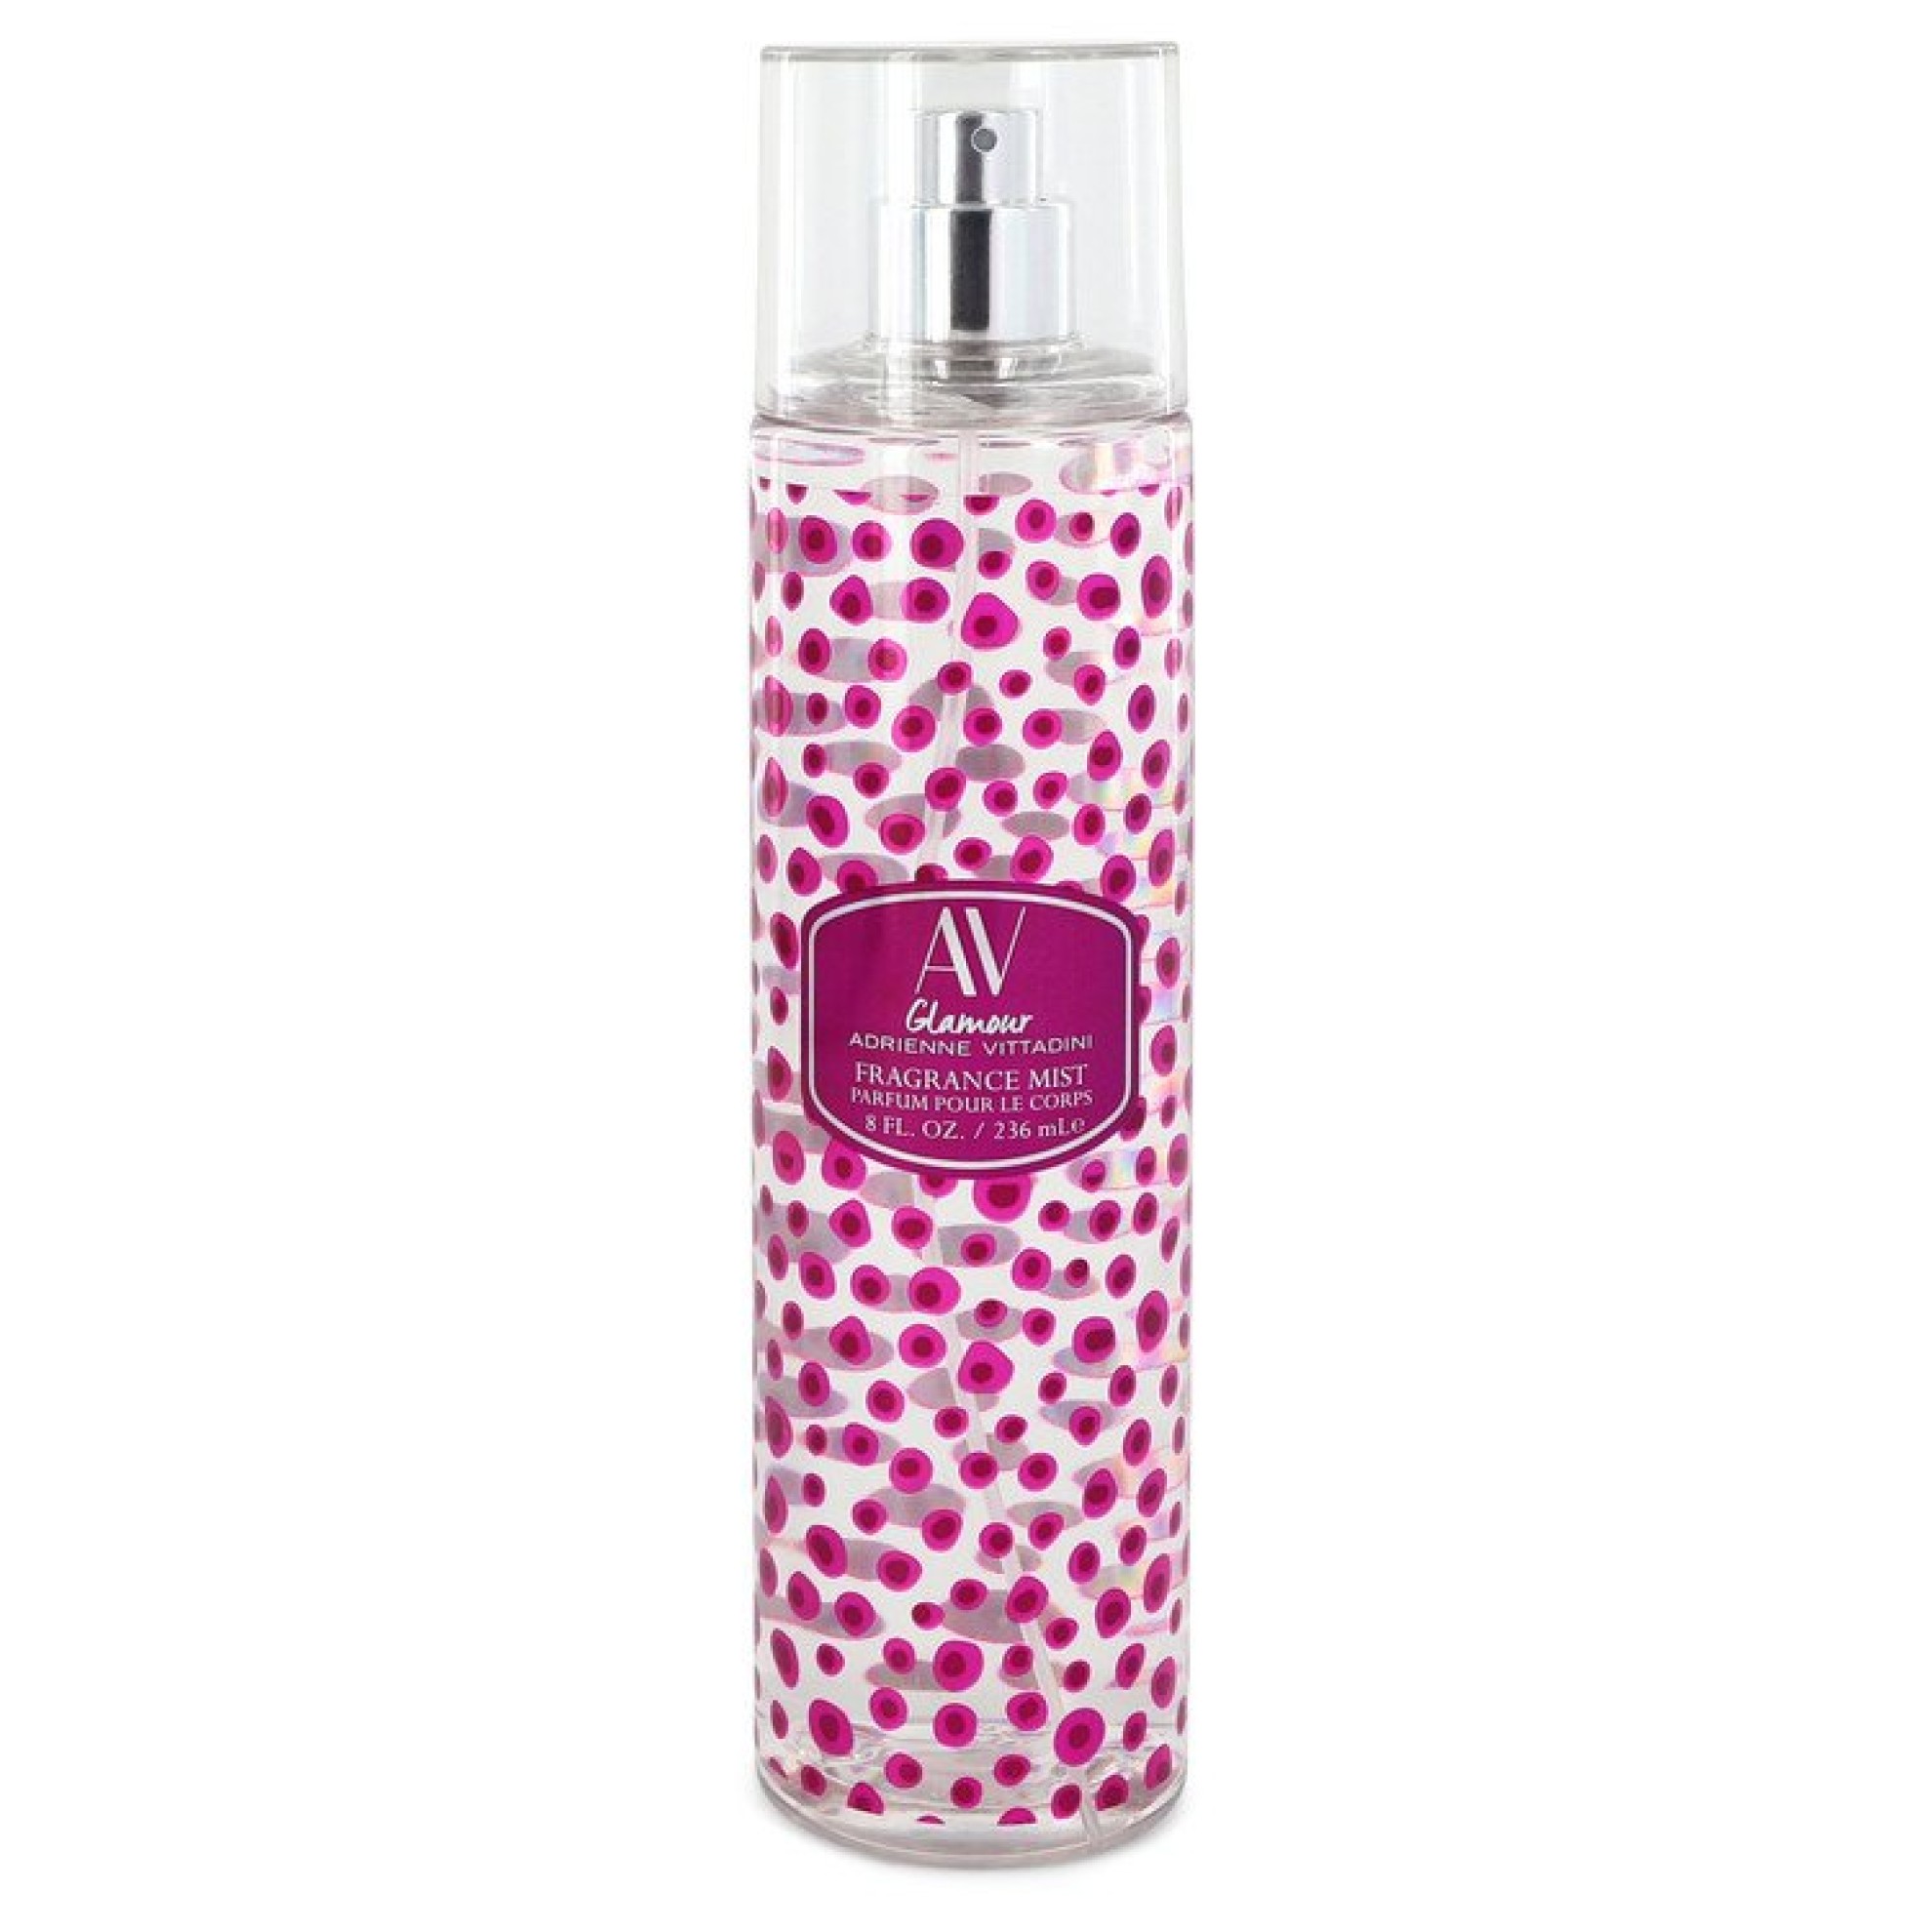 Image of Adrienne Vittadini AV Glamour Fragrance Mist Spray 240 ml von XXL-Parfum.ch